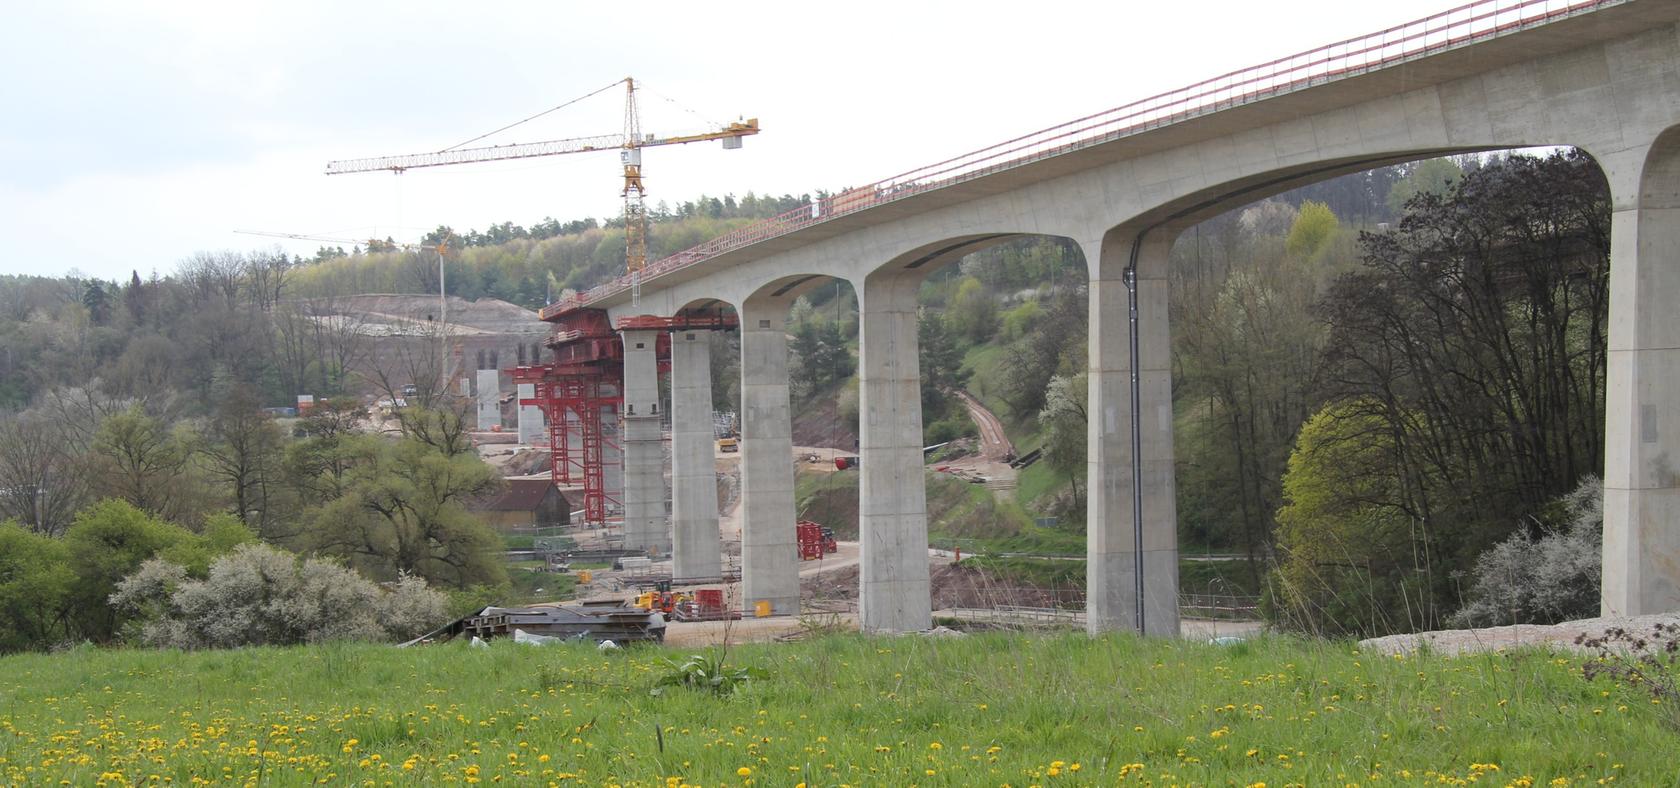 Lange genug hat's gedauert, jetzt ist sie fertig: die neue Eisenbahnbrücke bei Emskirchen.